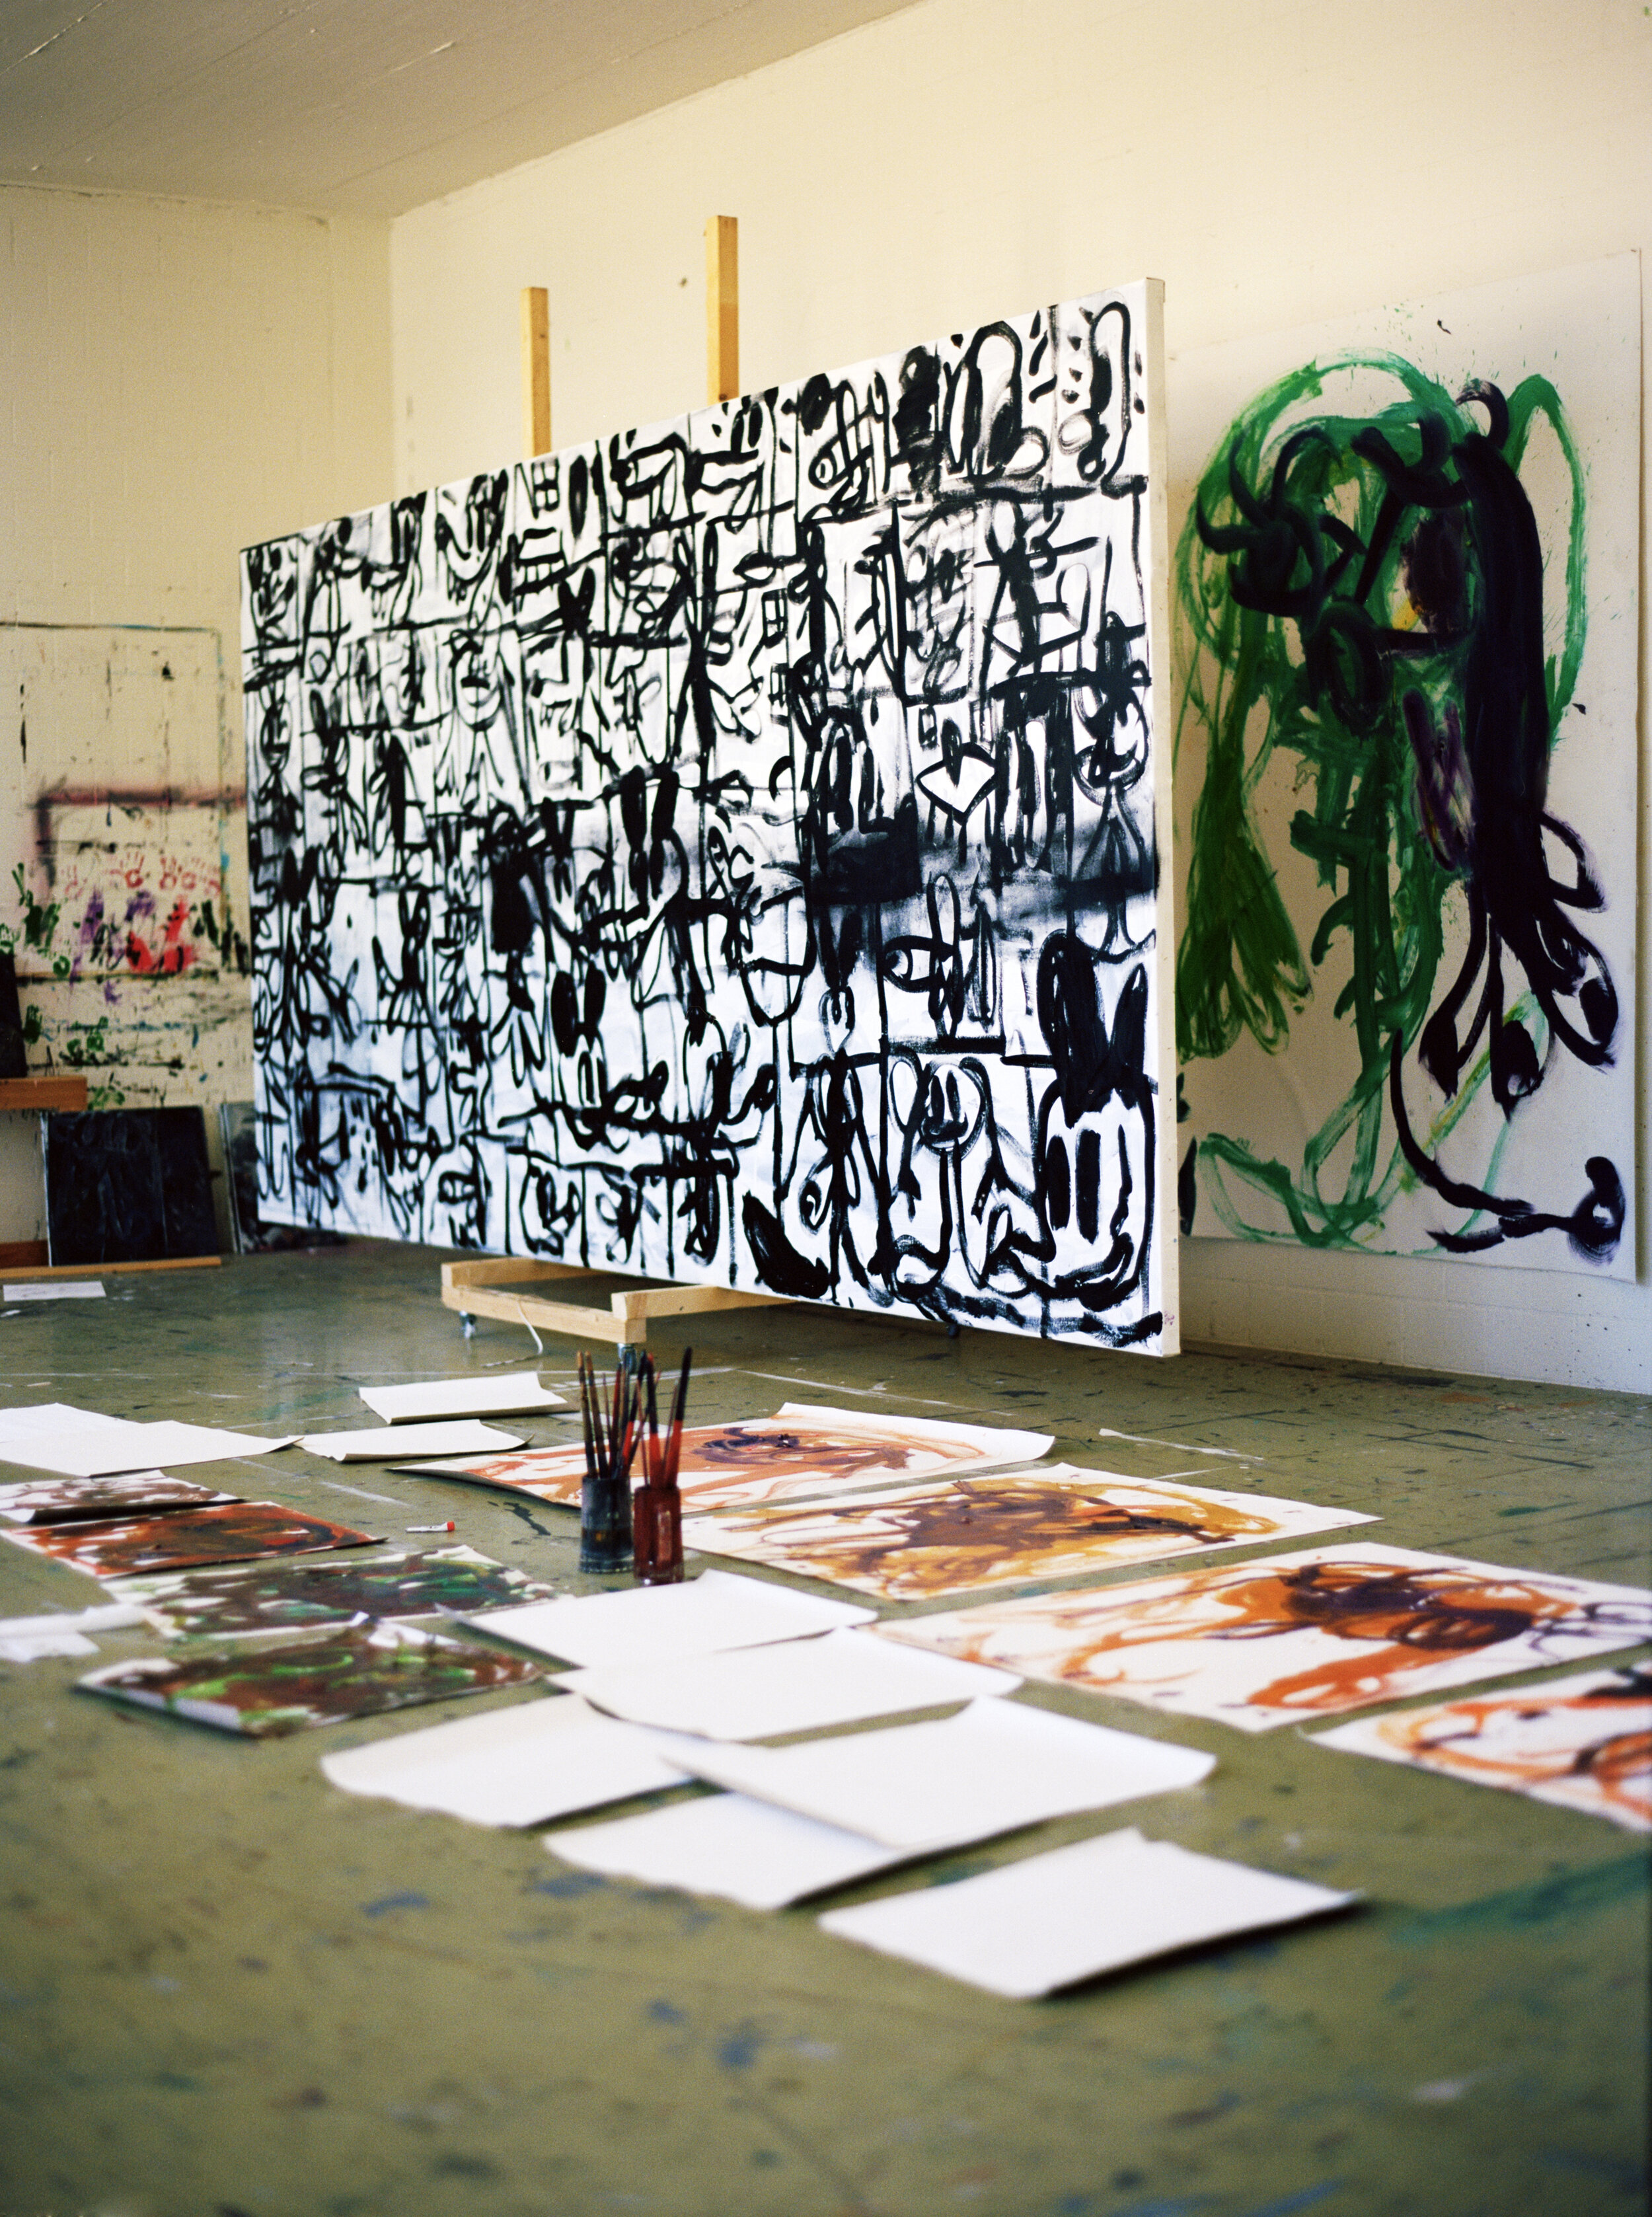  The Studio of Armen Eloyan in Zurich 